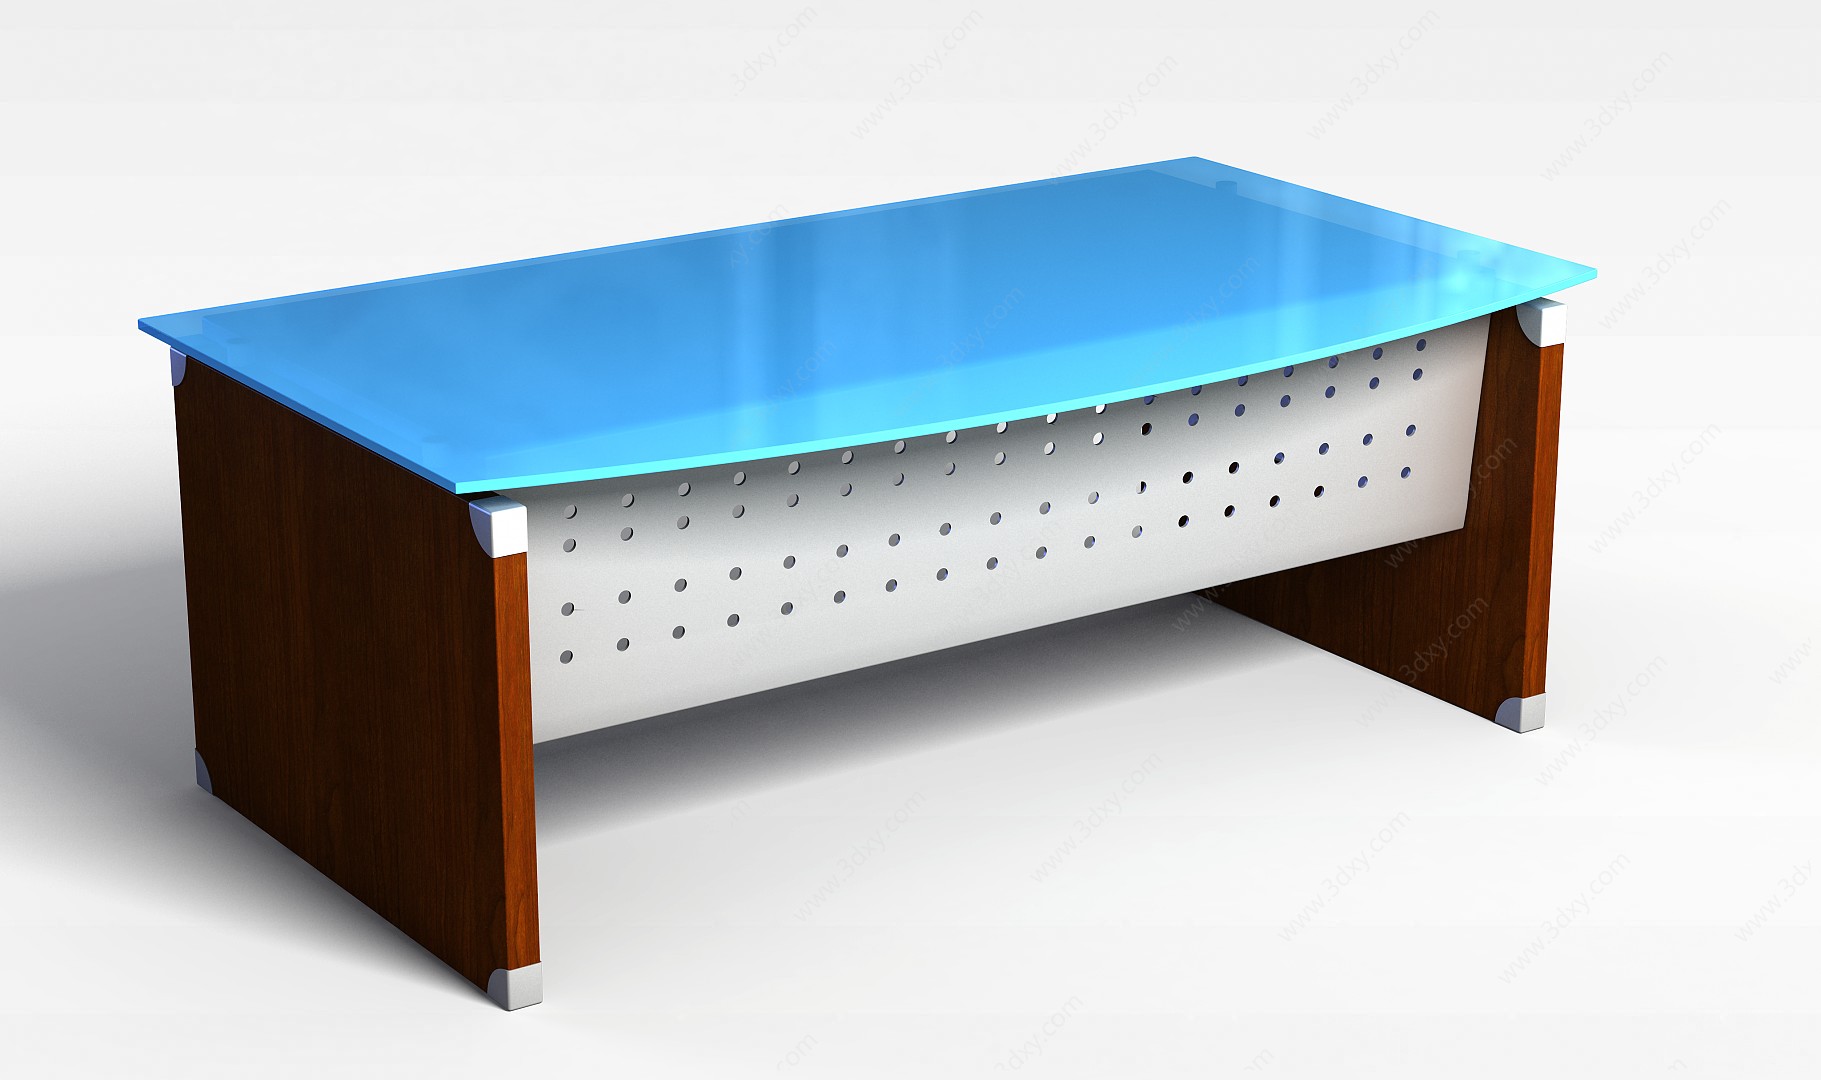 简约办公桌3D模型